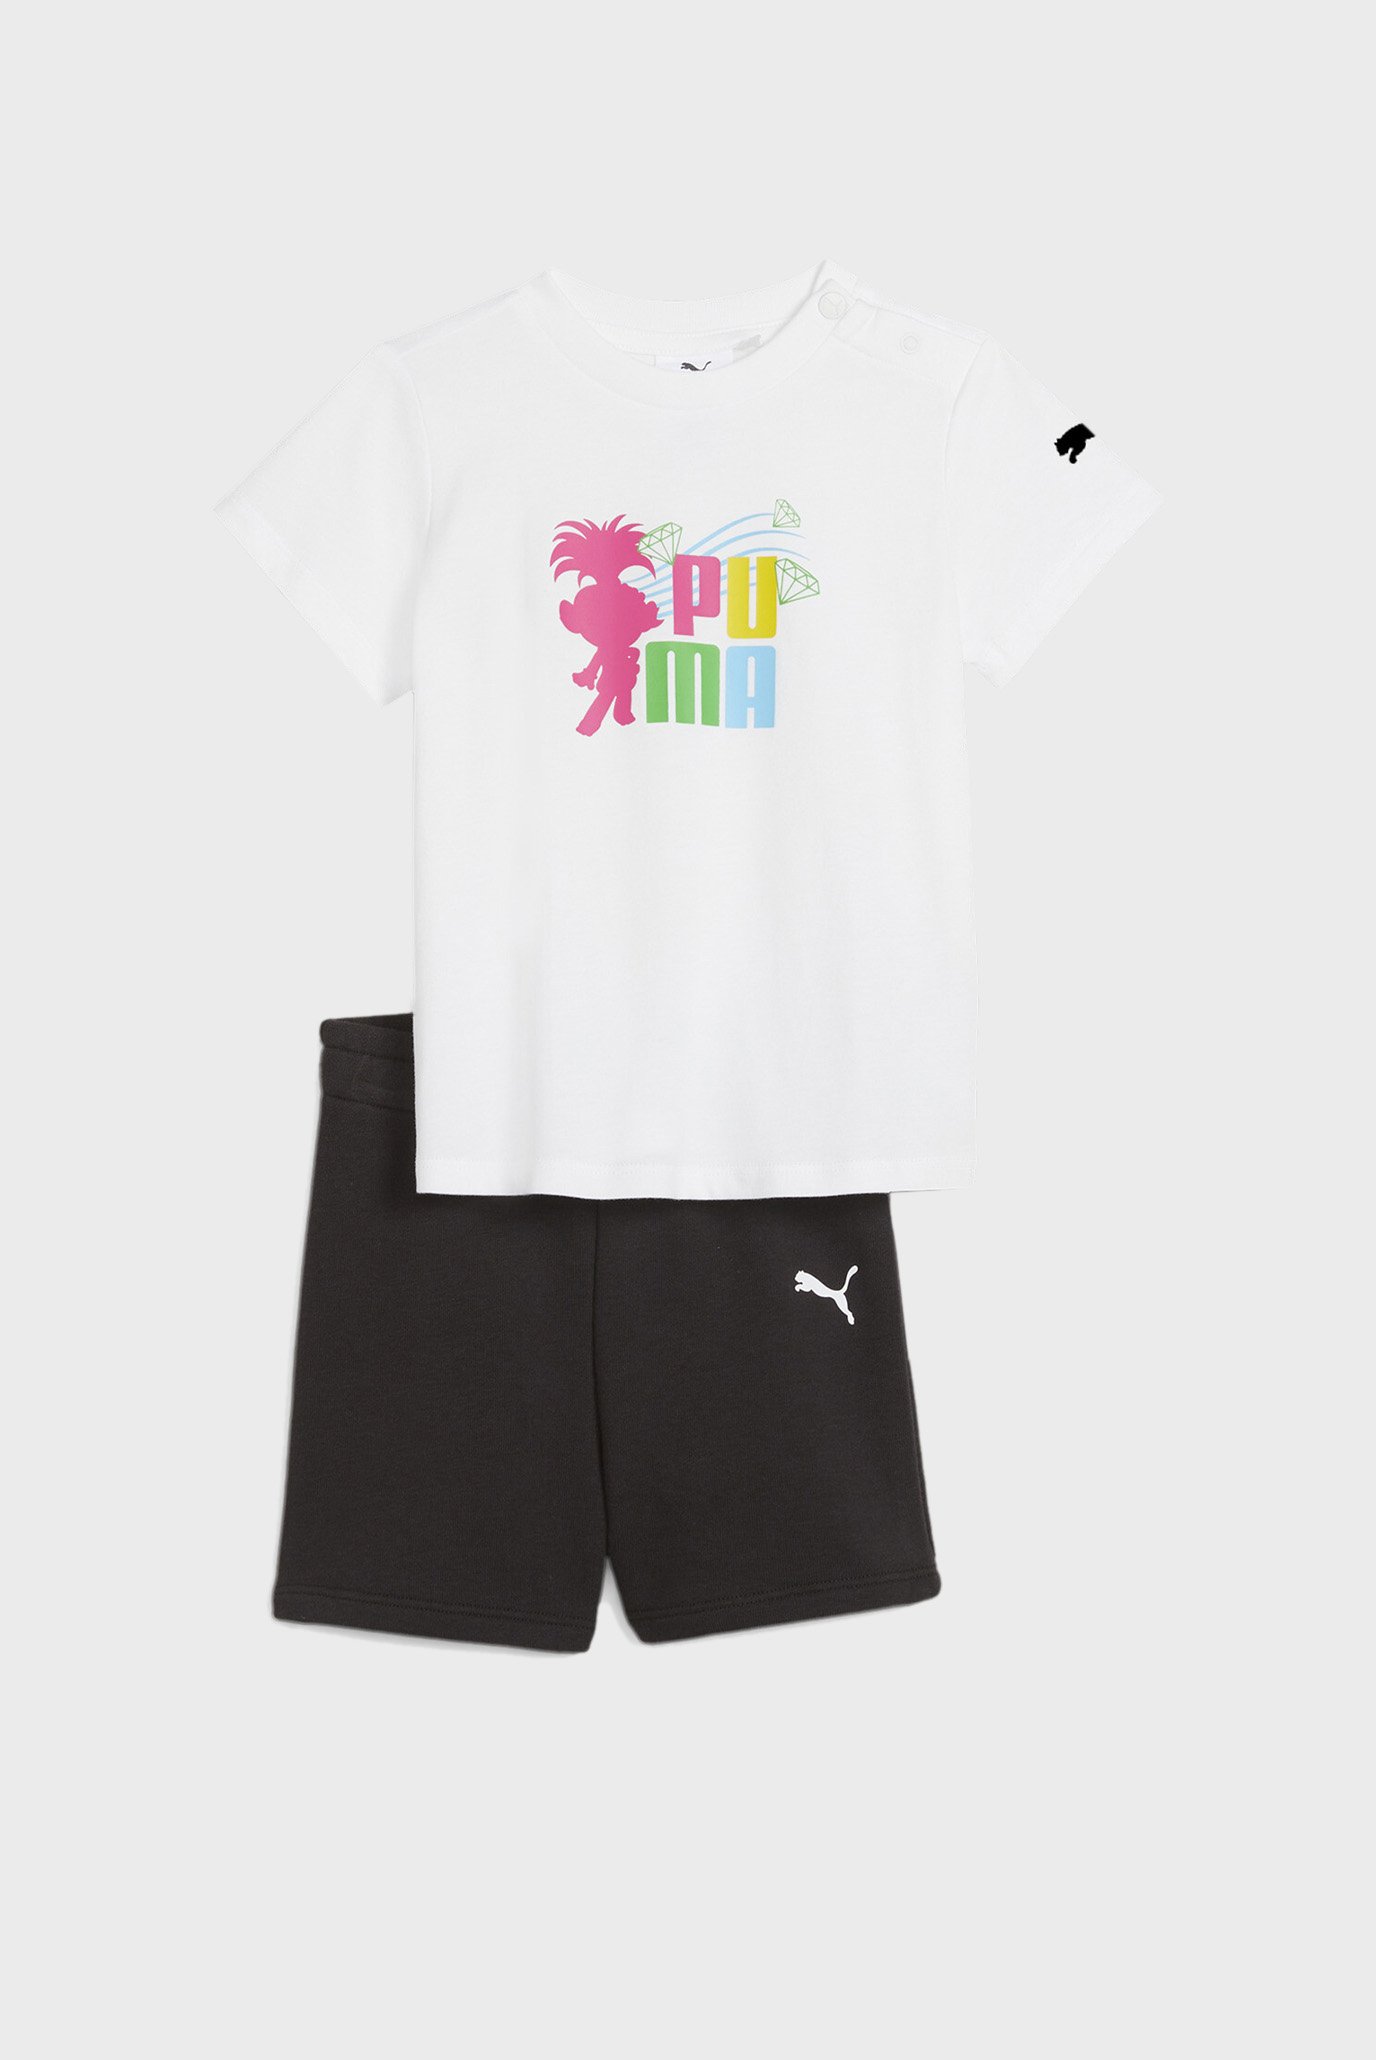 Детский комплект одежды (футболка, шорты) PUMA x TROLLS Toddlers' Minicats Set 1